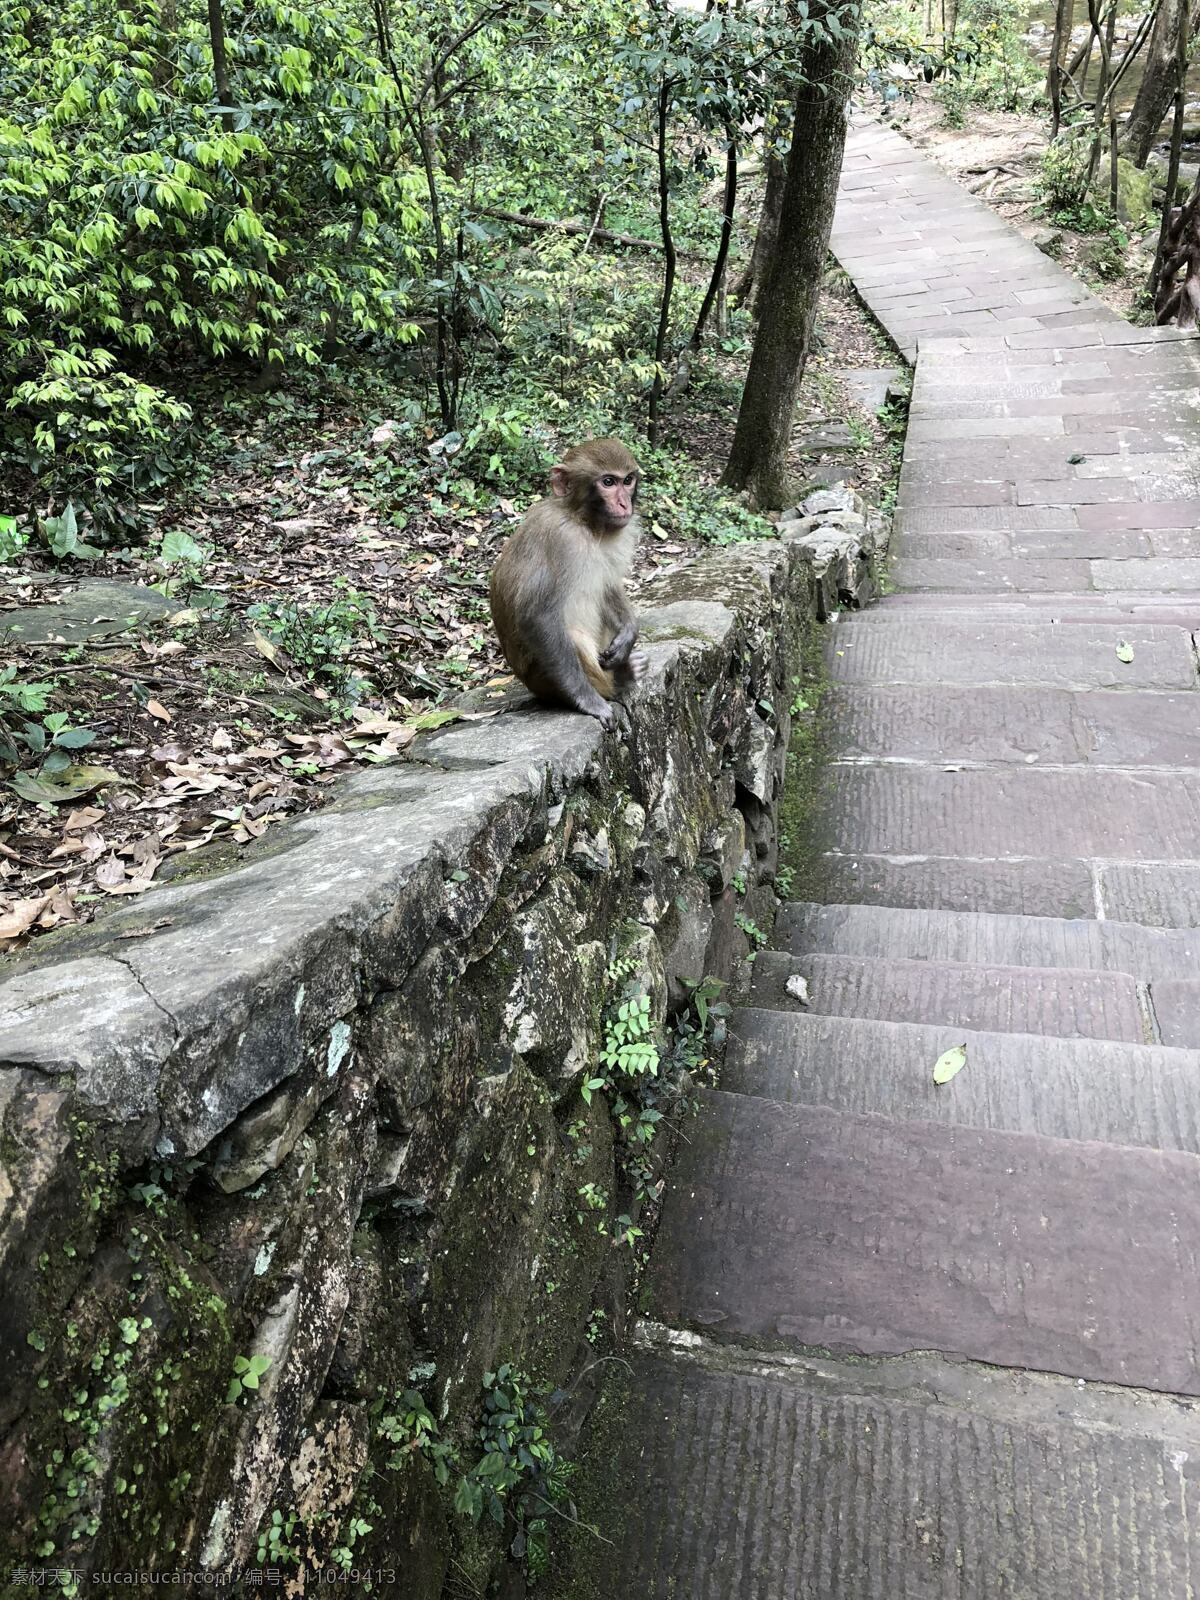 猴子风景图片 猴子 风景 梯子 树 猴子静坐 旅游摄影 国内旅游